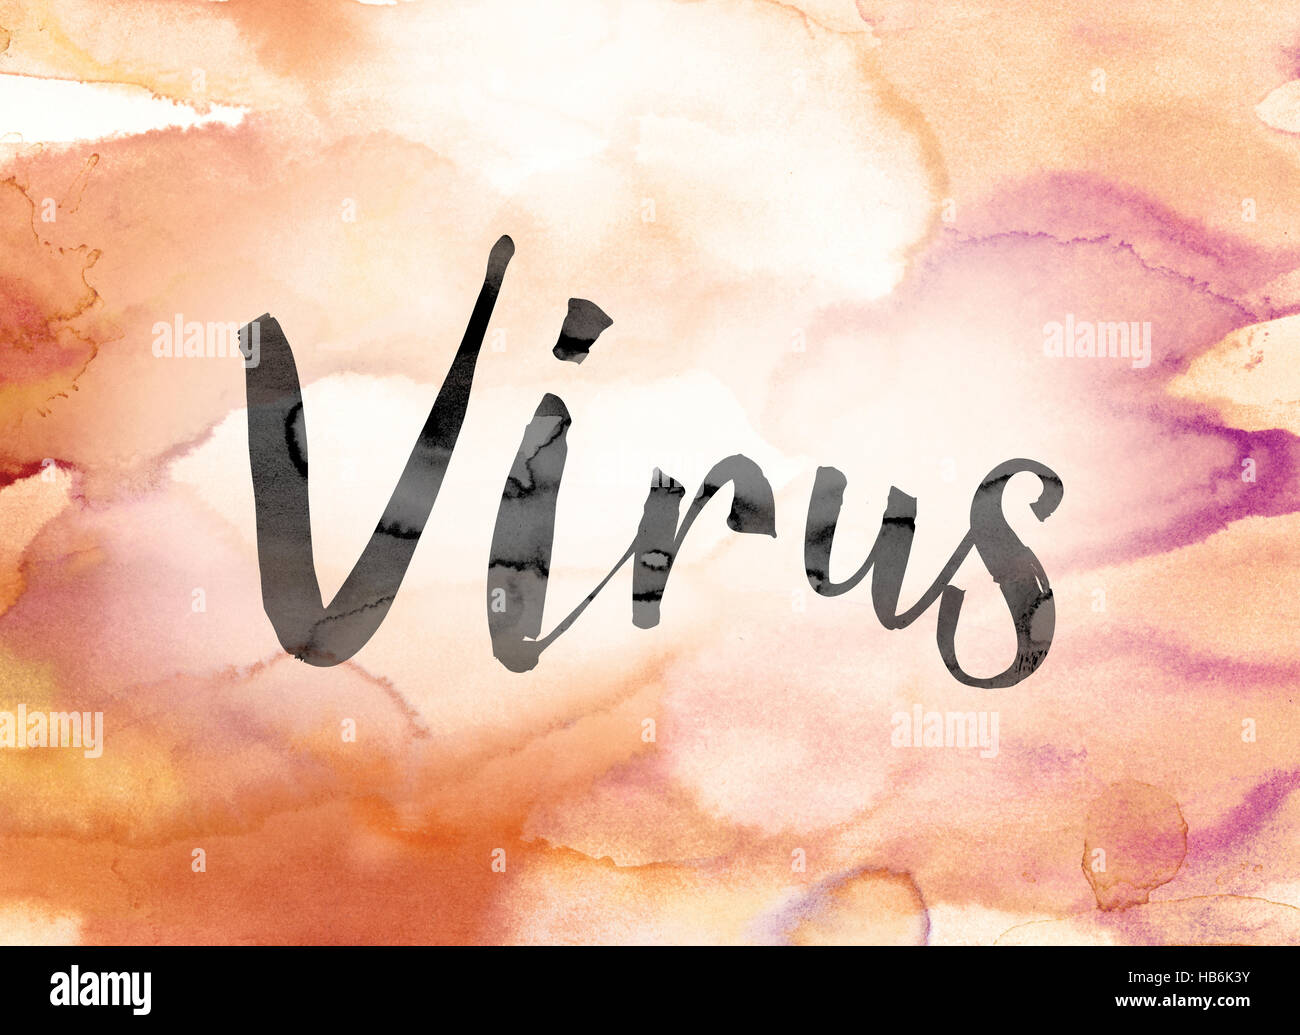 Le mot "virus" peint en noir sur un fond coloré aquarelle lavé concept et thème. Banque D'Images